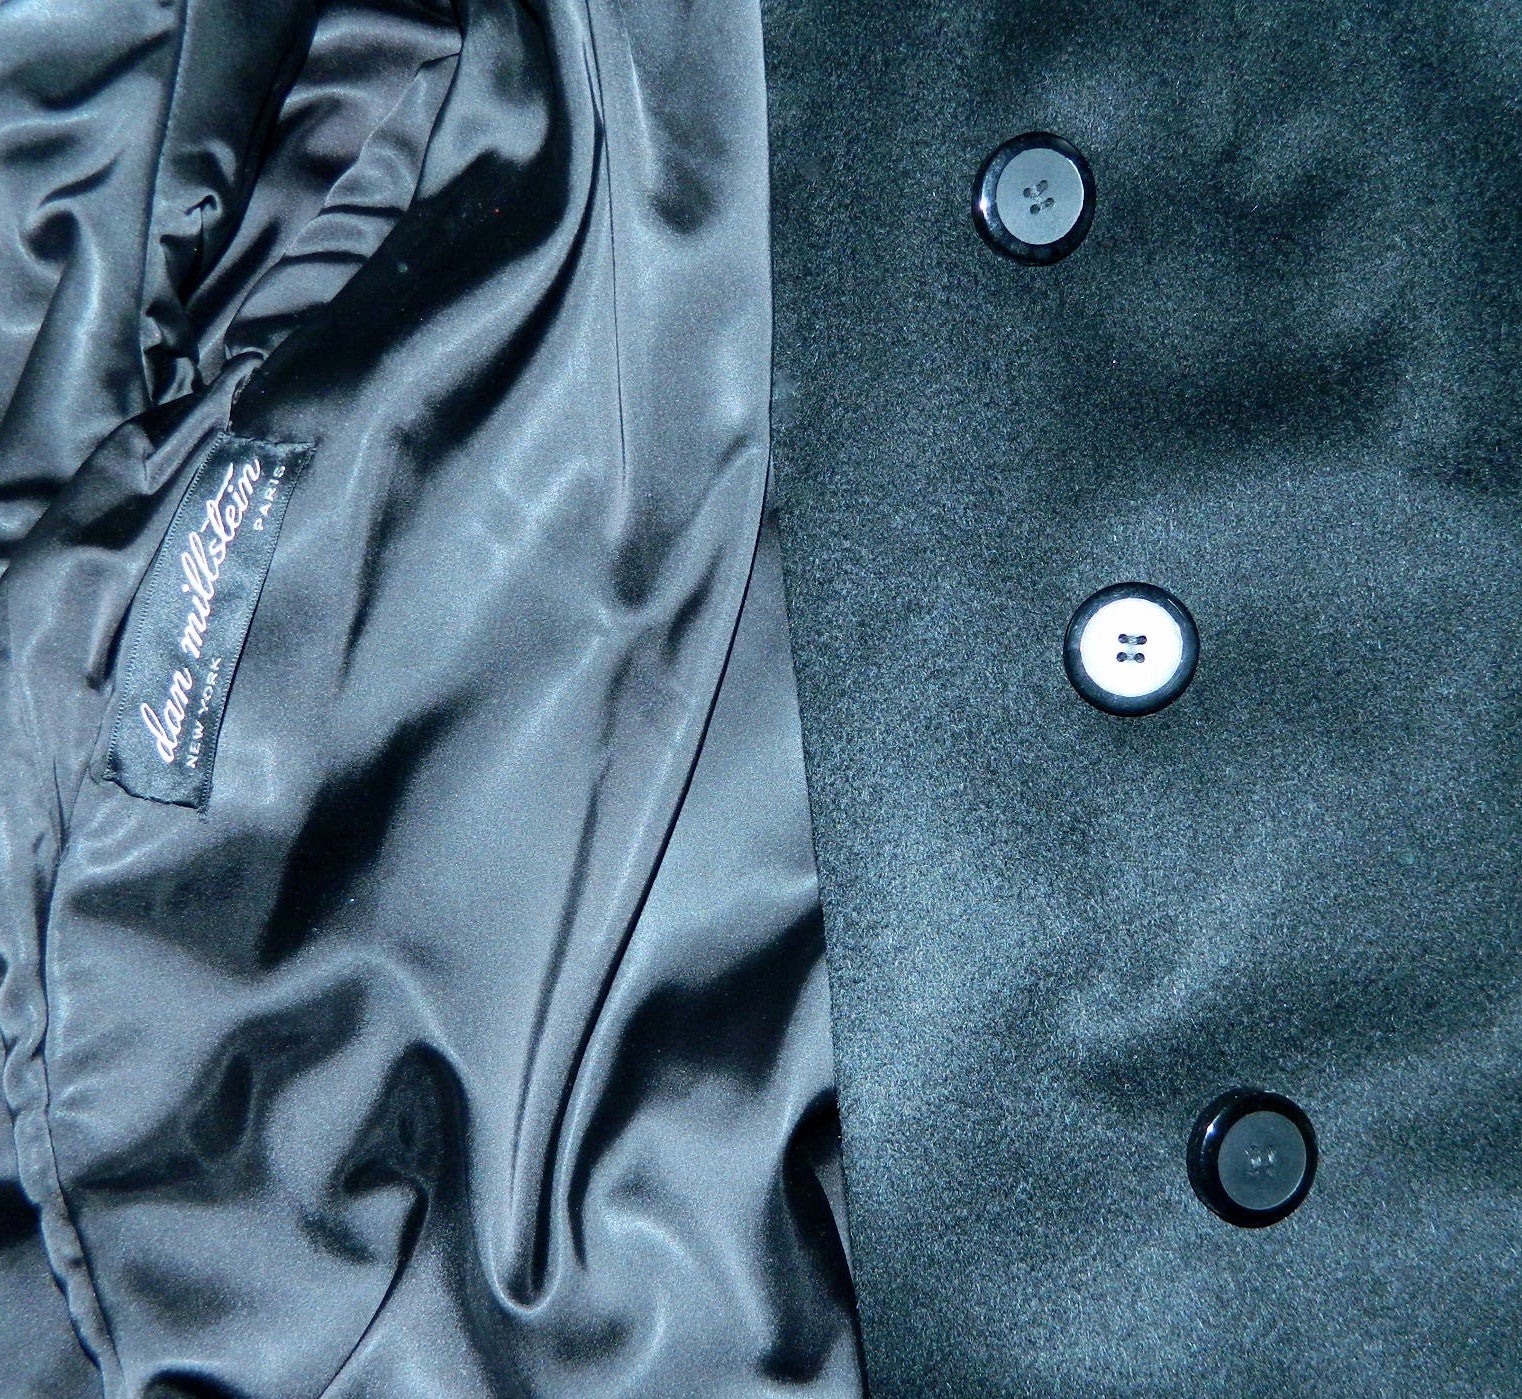 vintage 1960s black wool coat Dan Millstein pea coat L - XL